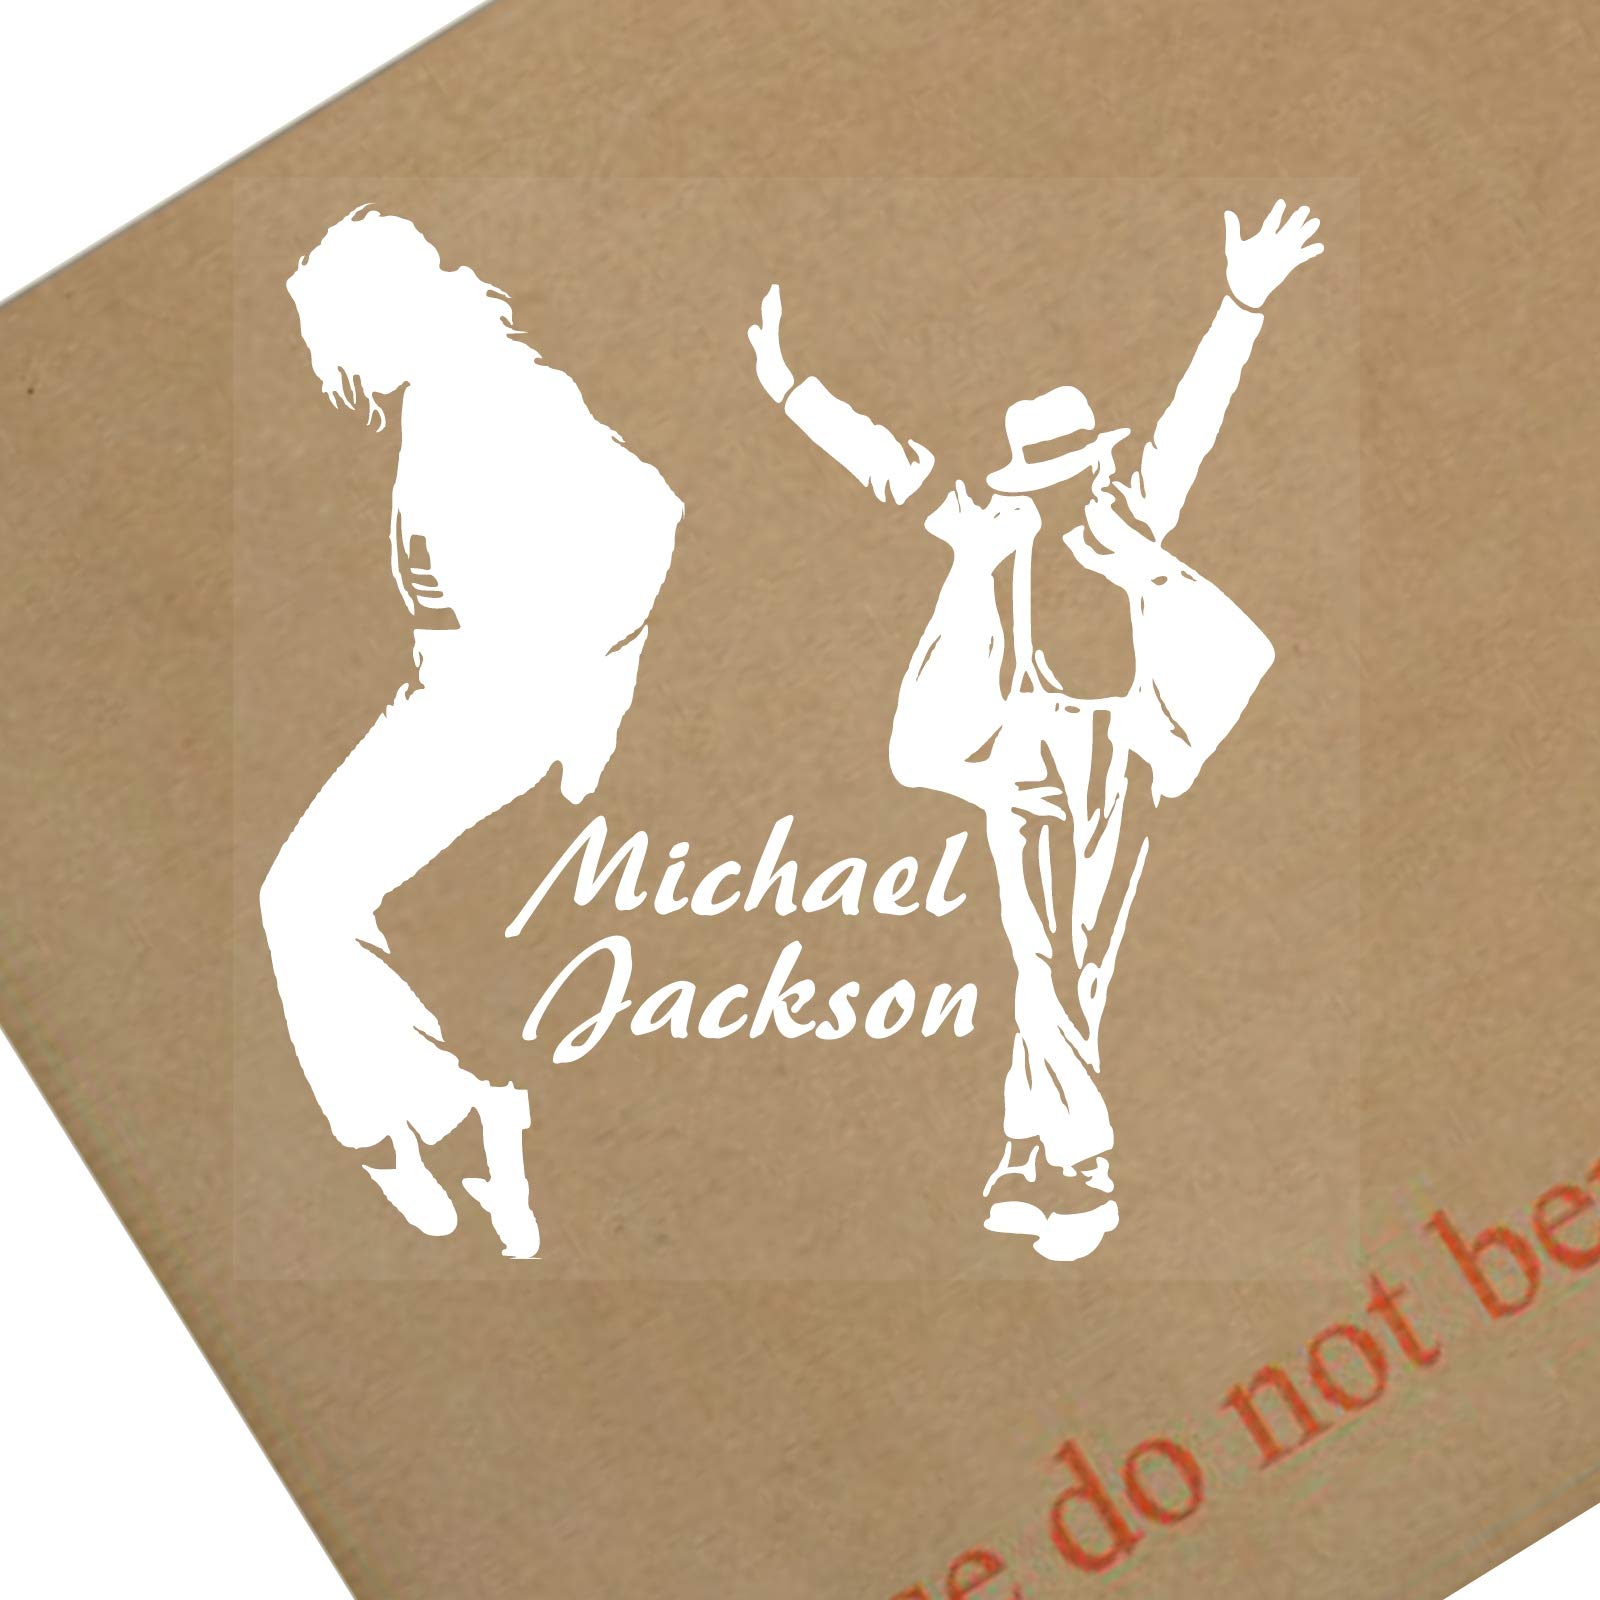 Michael Jackson Fenster sticker-87 mm Auto, Van, Truck, Fahrzeug, selbstklebendes Vinyl sign-design 1 von Platinum Place